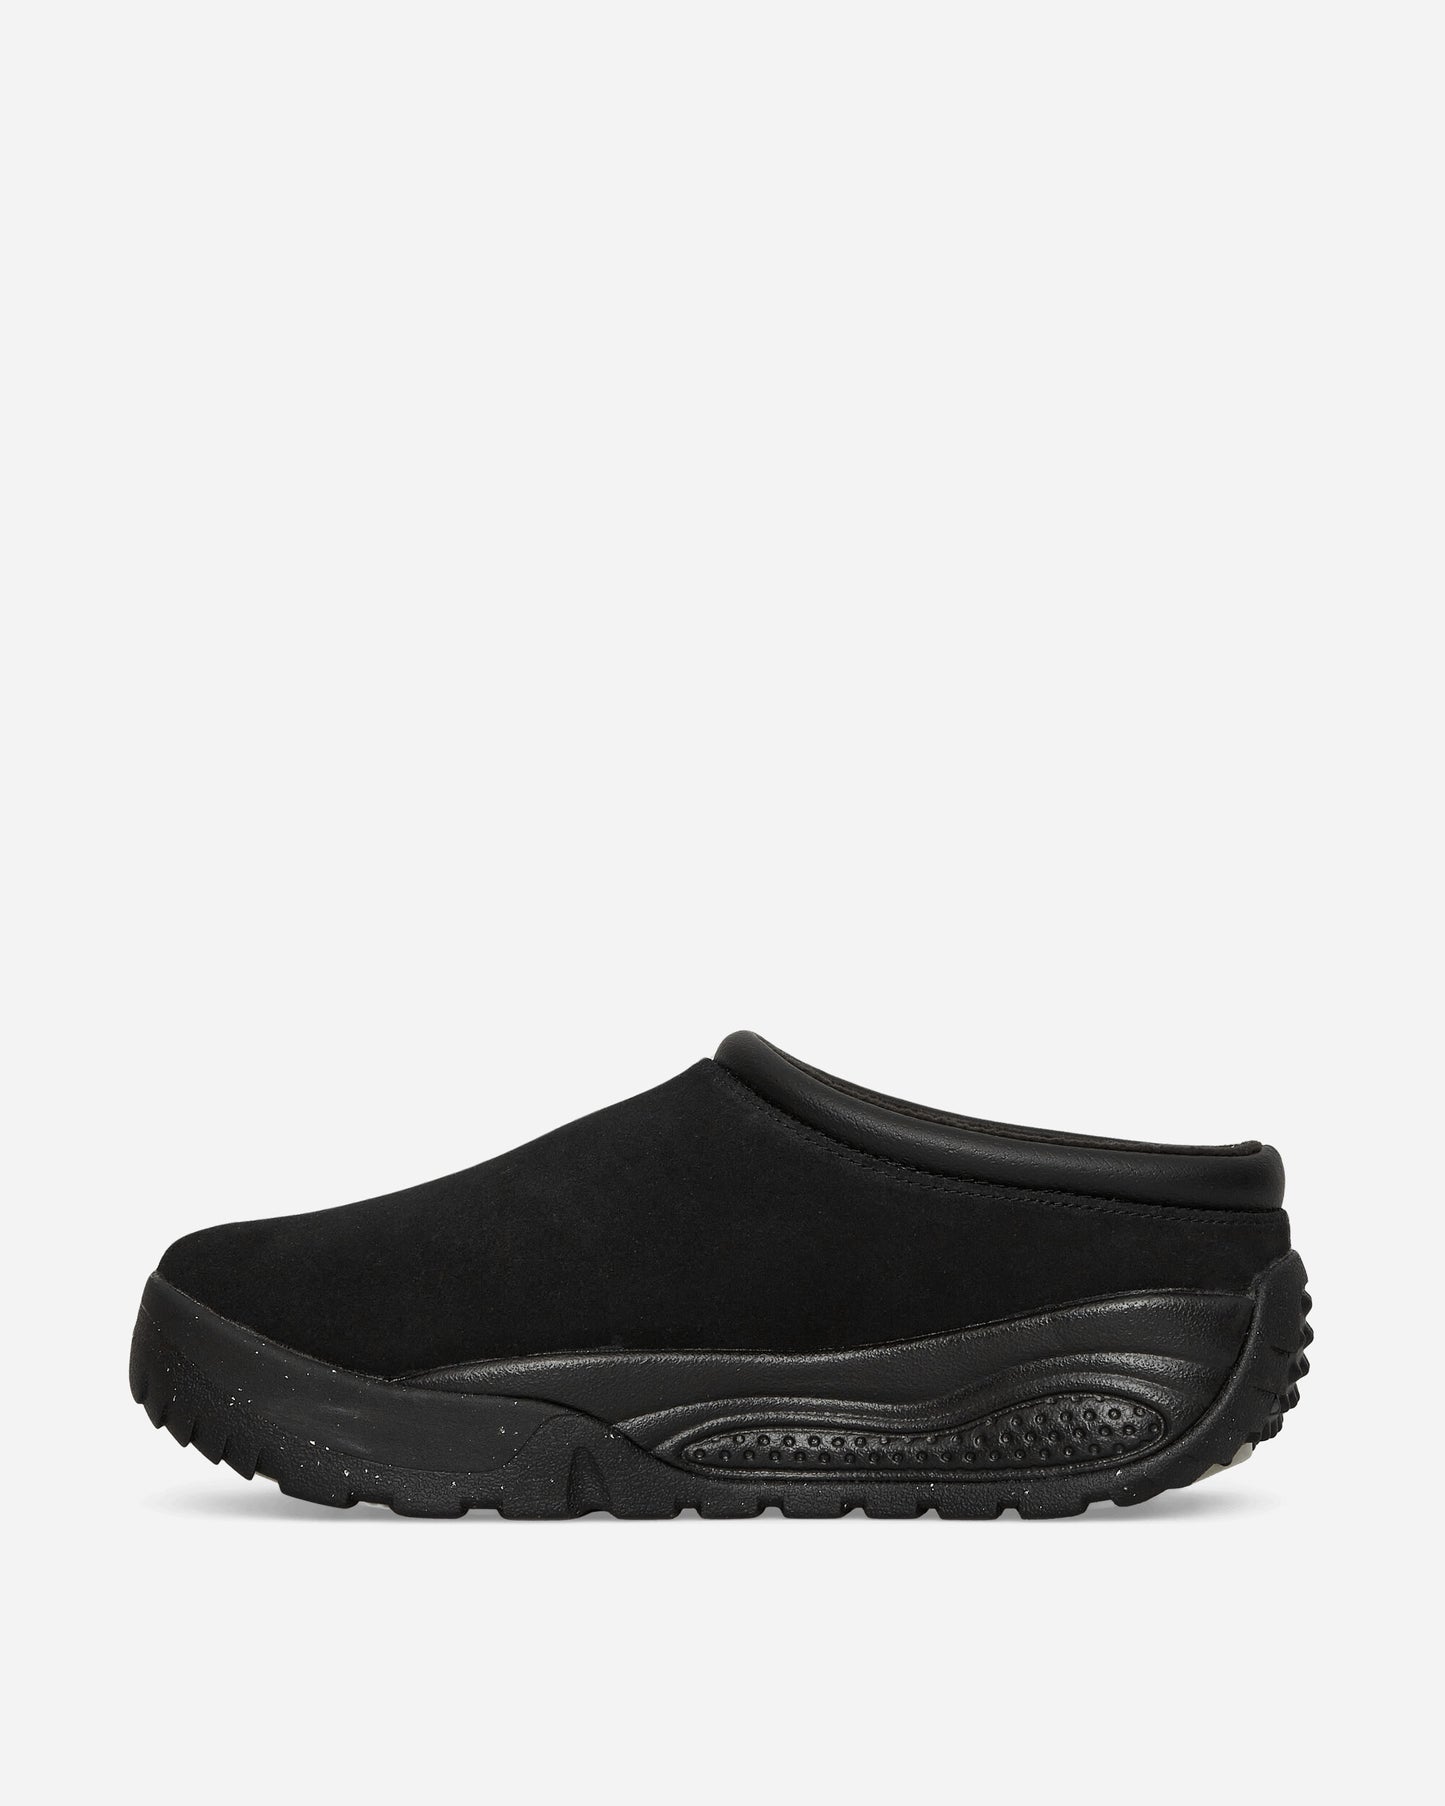 Nike Acg Rufus Black/Black Sneakers Low FV2923-001